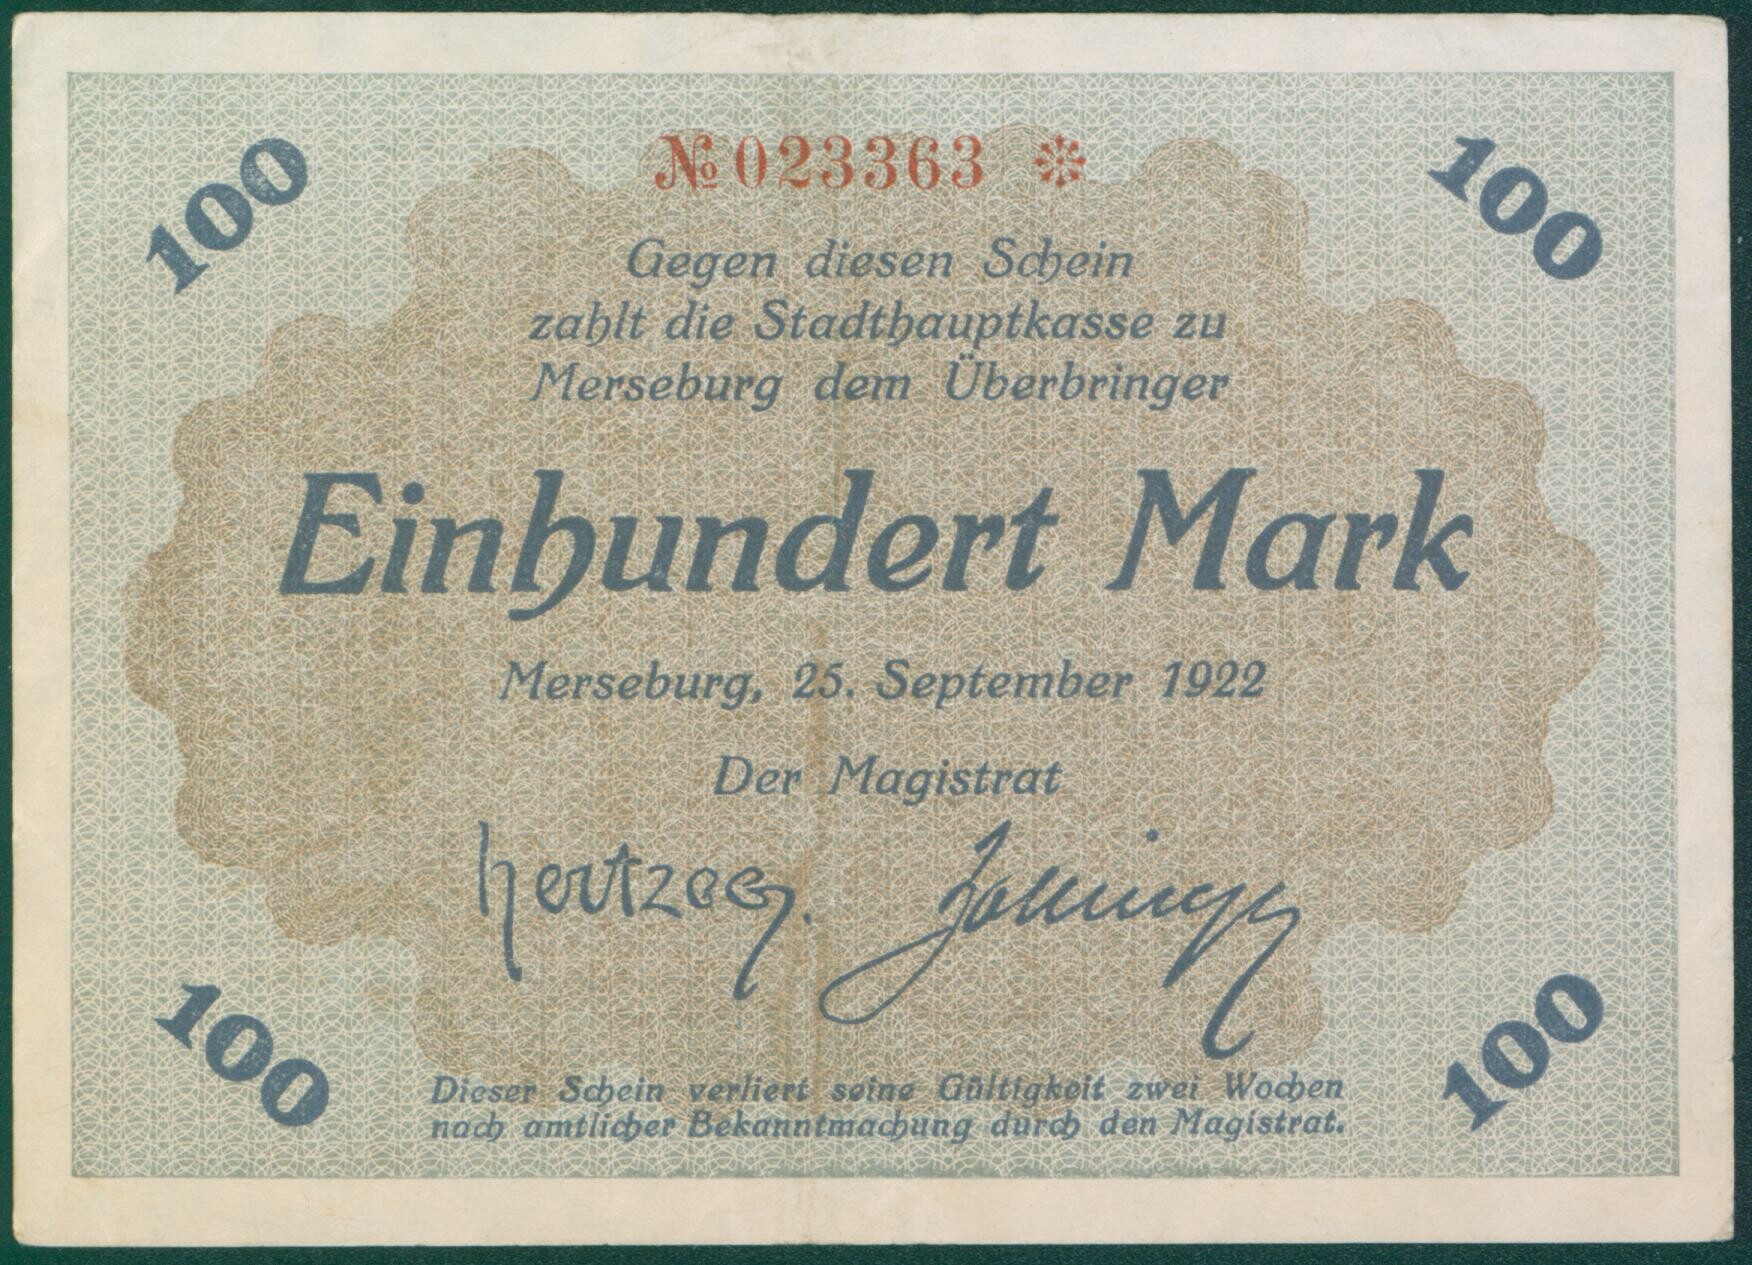 Notgeldschein der Stadt Merseburg "Einhundert Mark", No. 023363 (Kulturhistorisches Museum Schloss Merseburg CC BY-NC-SA)